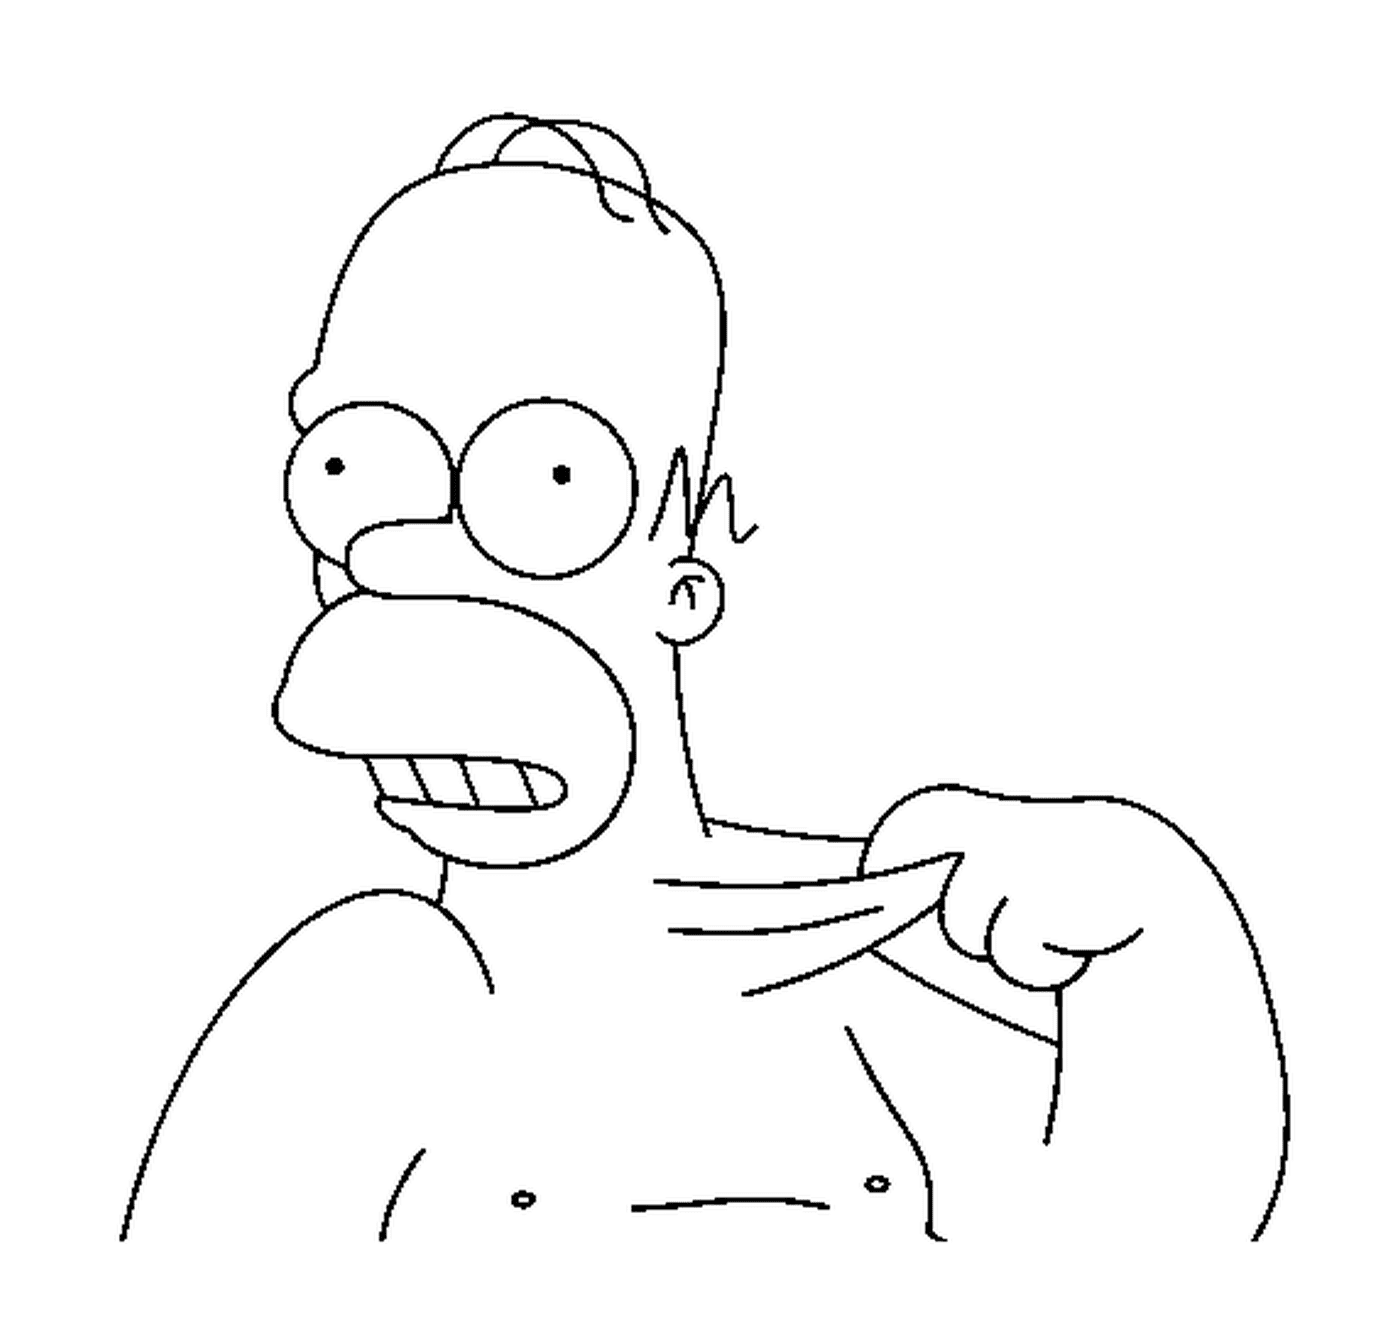  Homero Simpson con piel elástica 